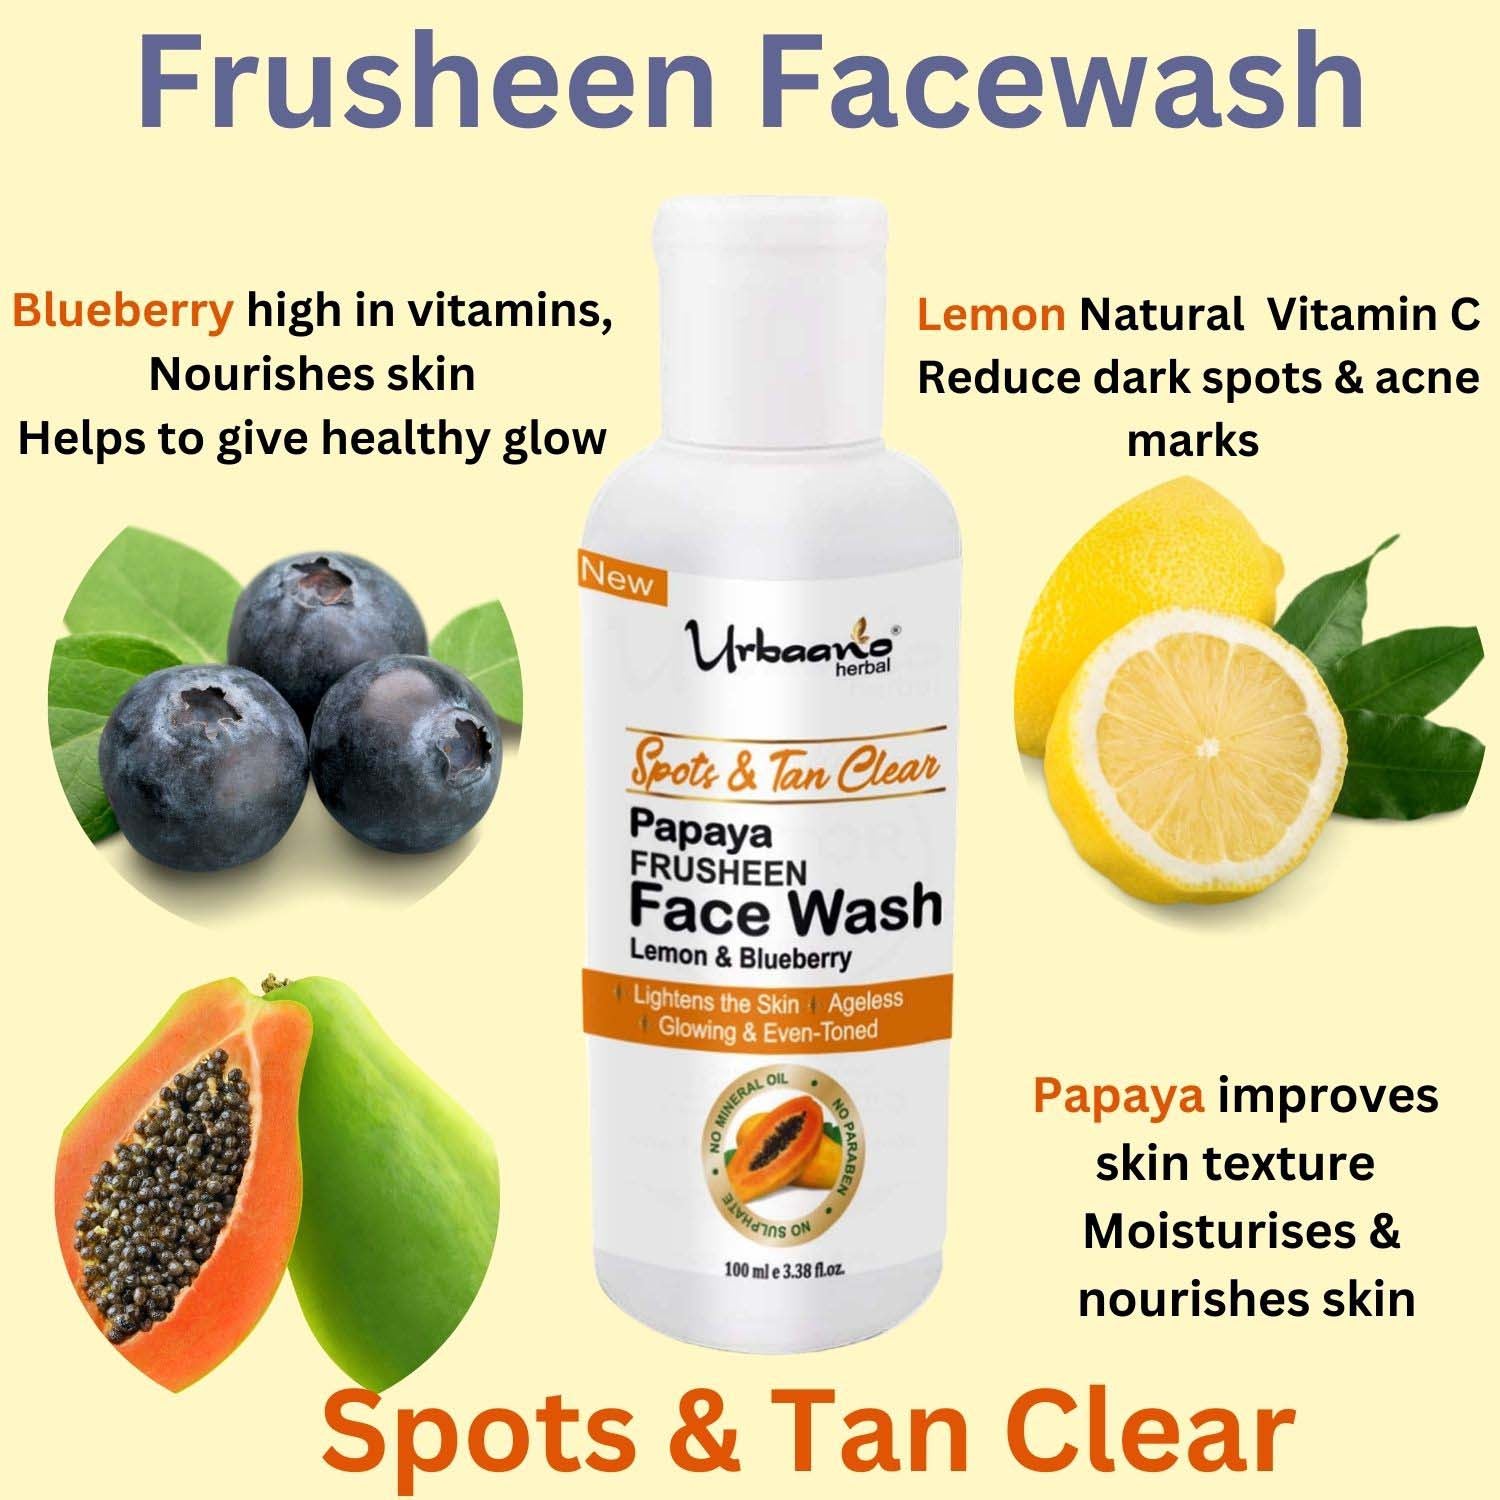 urbaano herbal frusheen face wash anti acne, papaya for skin lightening, spot & tan clear with lemon